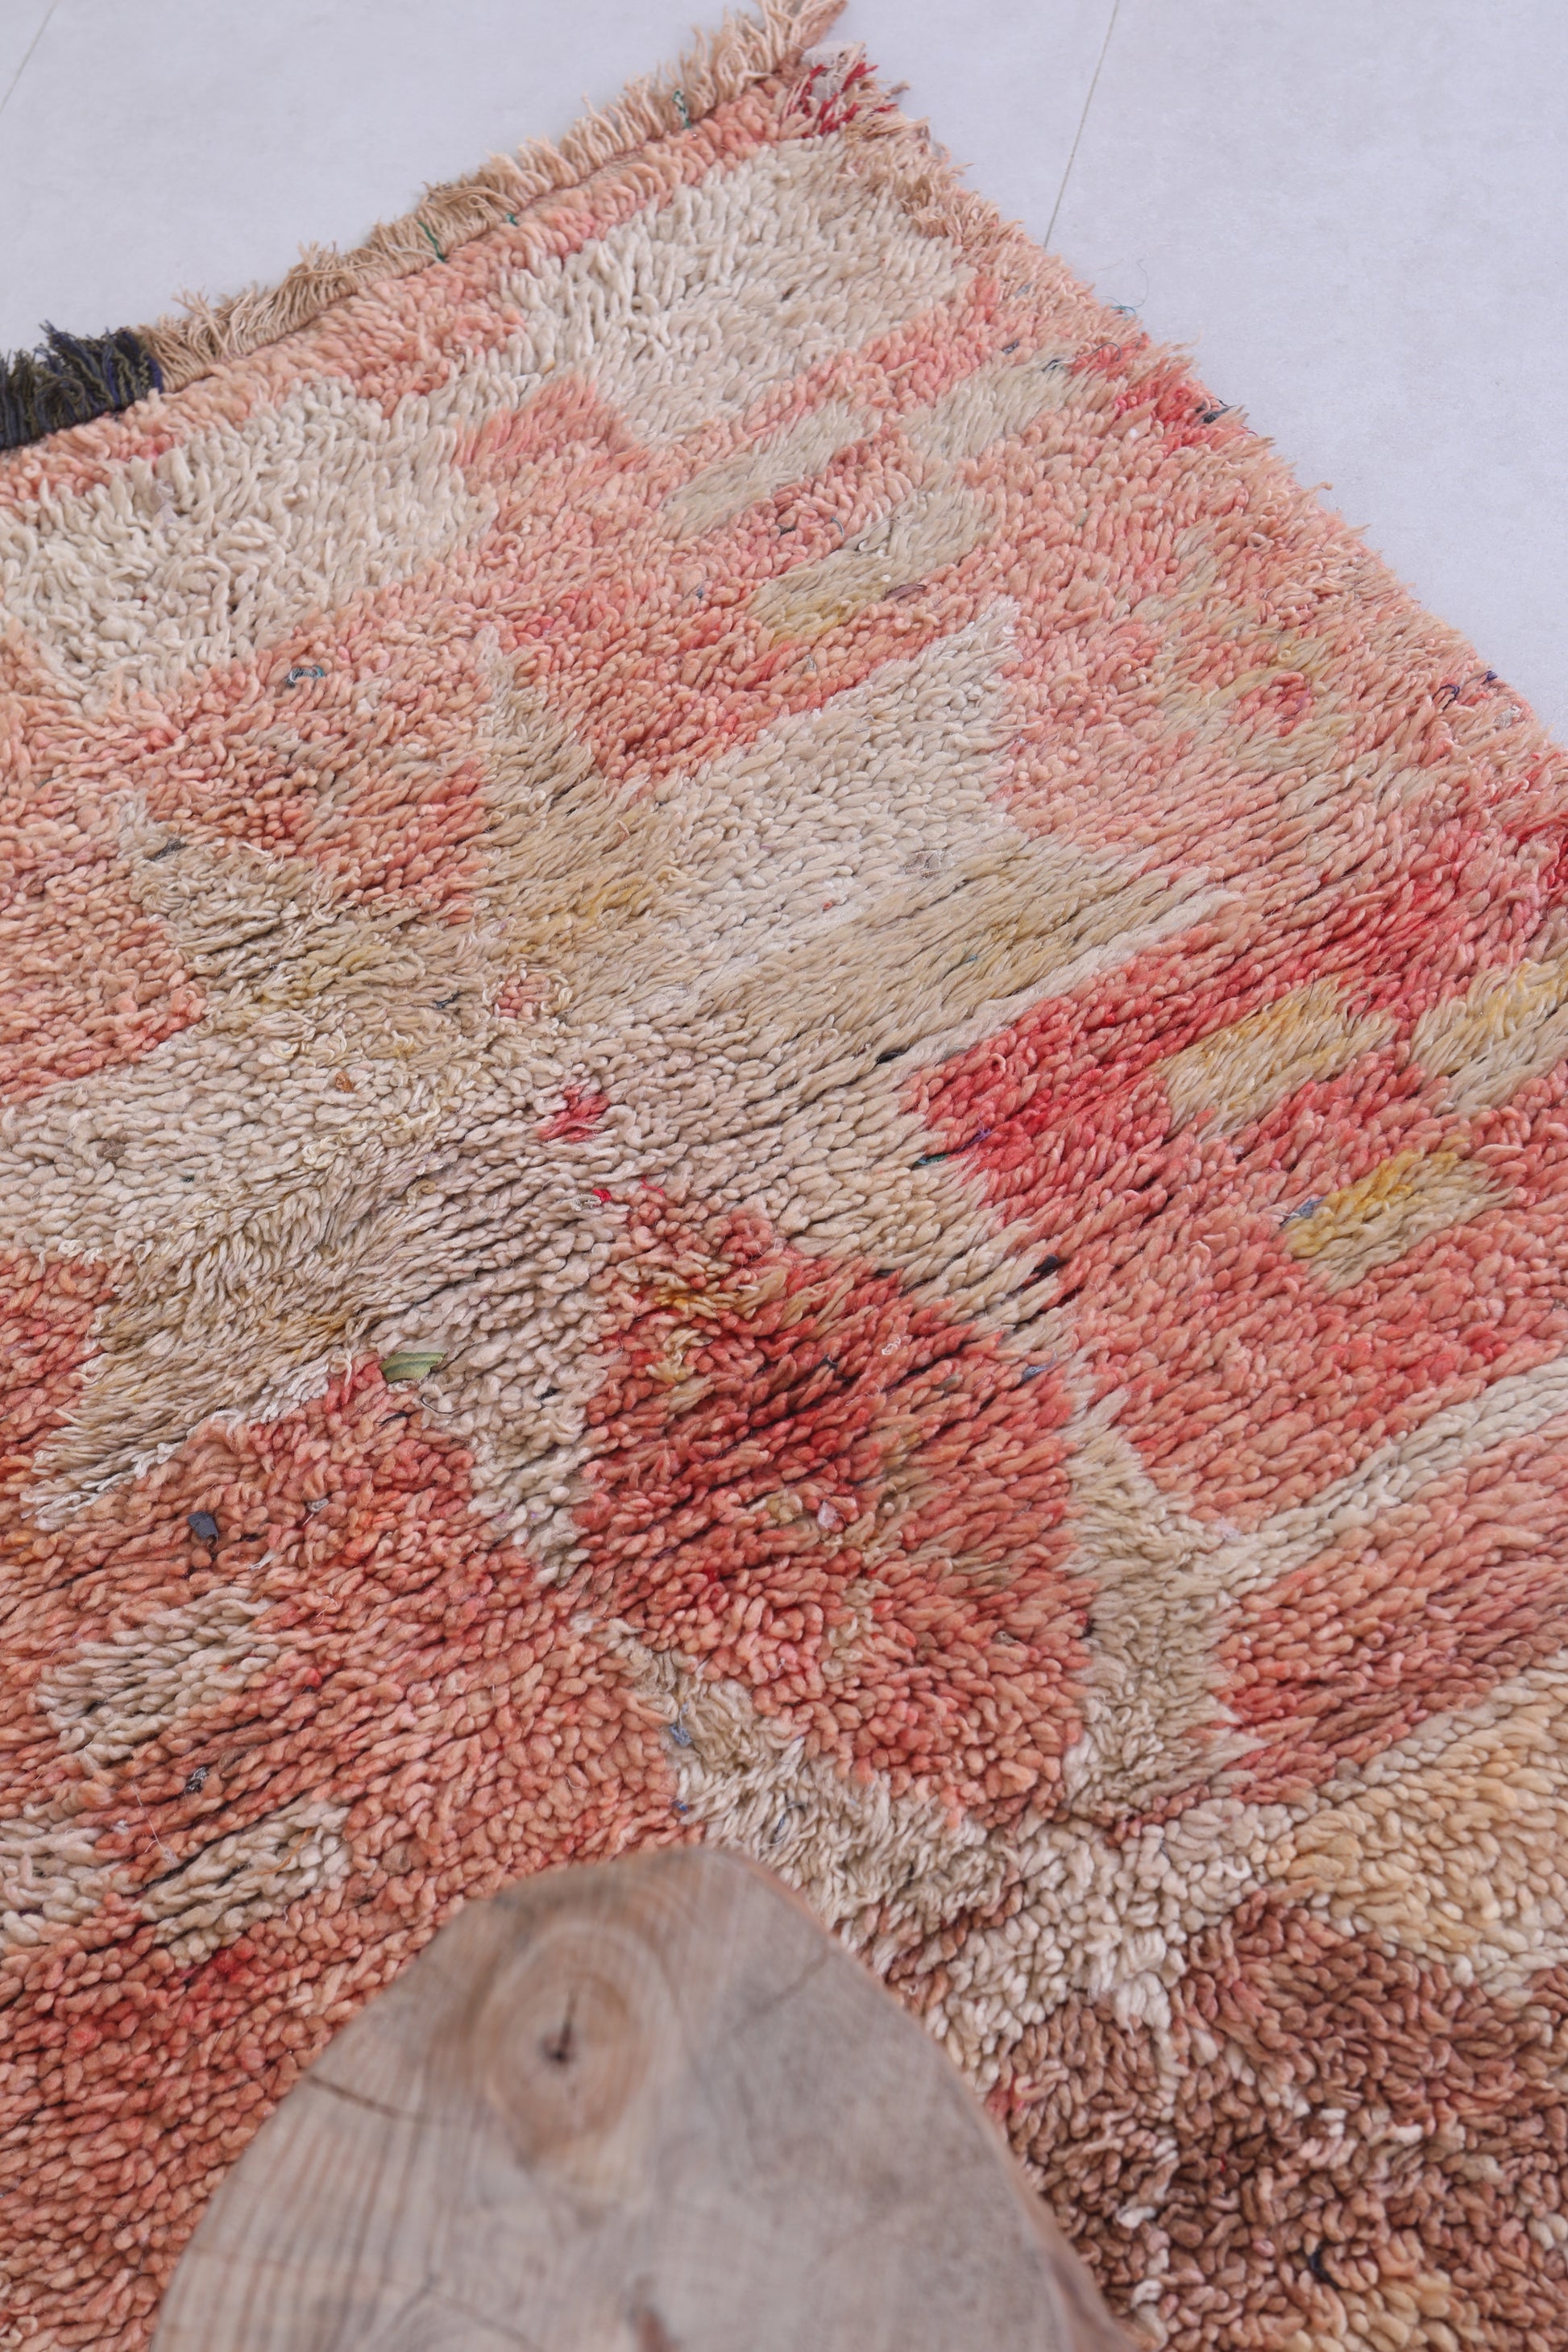 Vintage handmade moroccan berber runner rug 2.9 FT X 4.6 FT